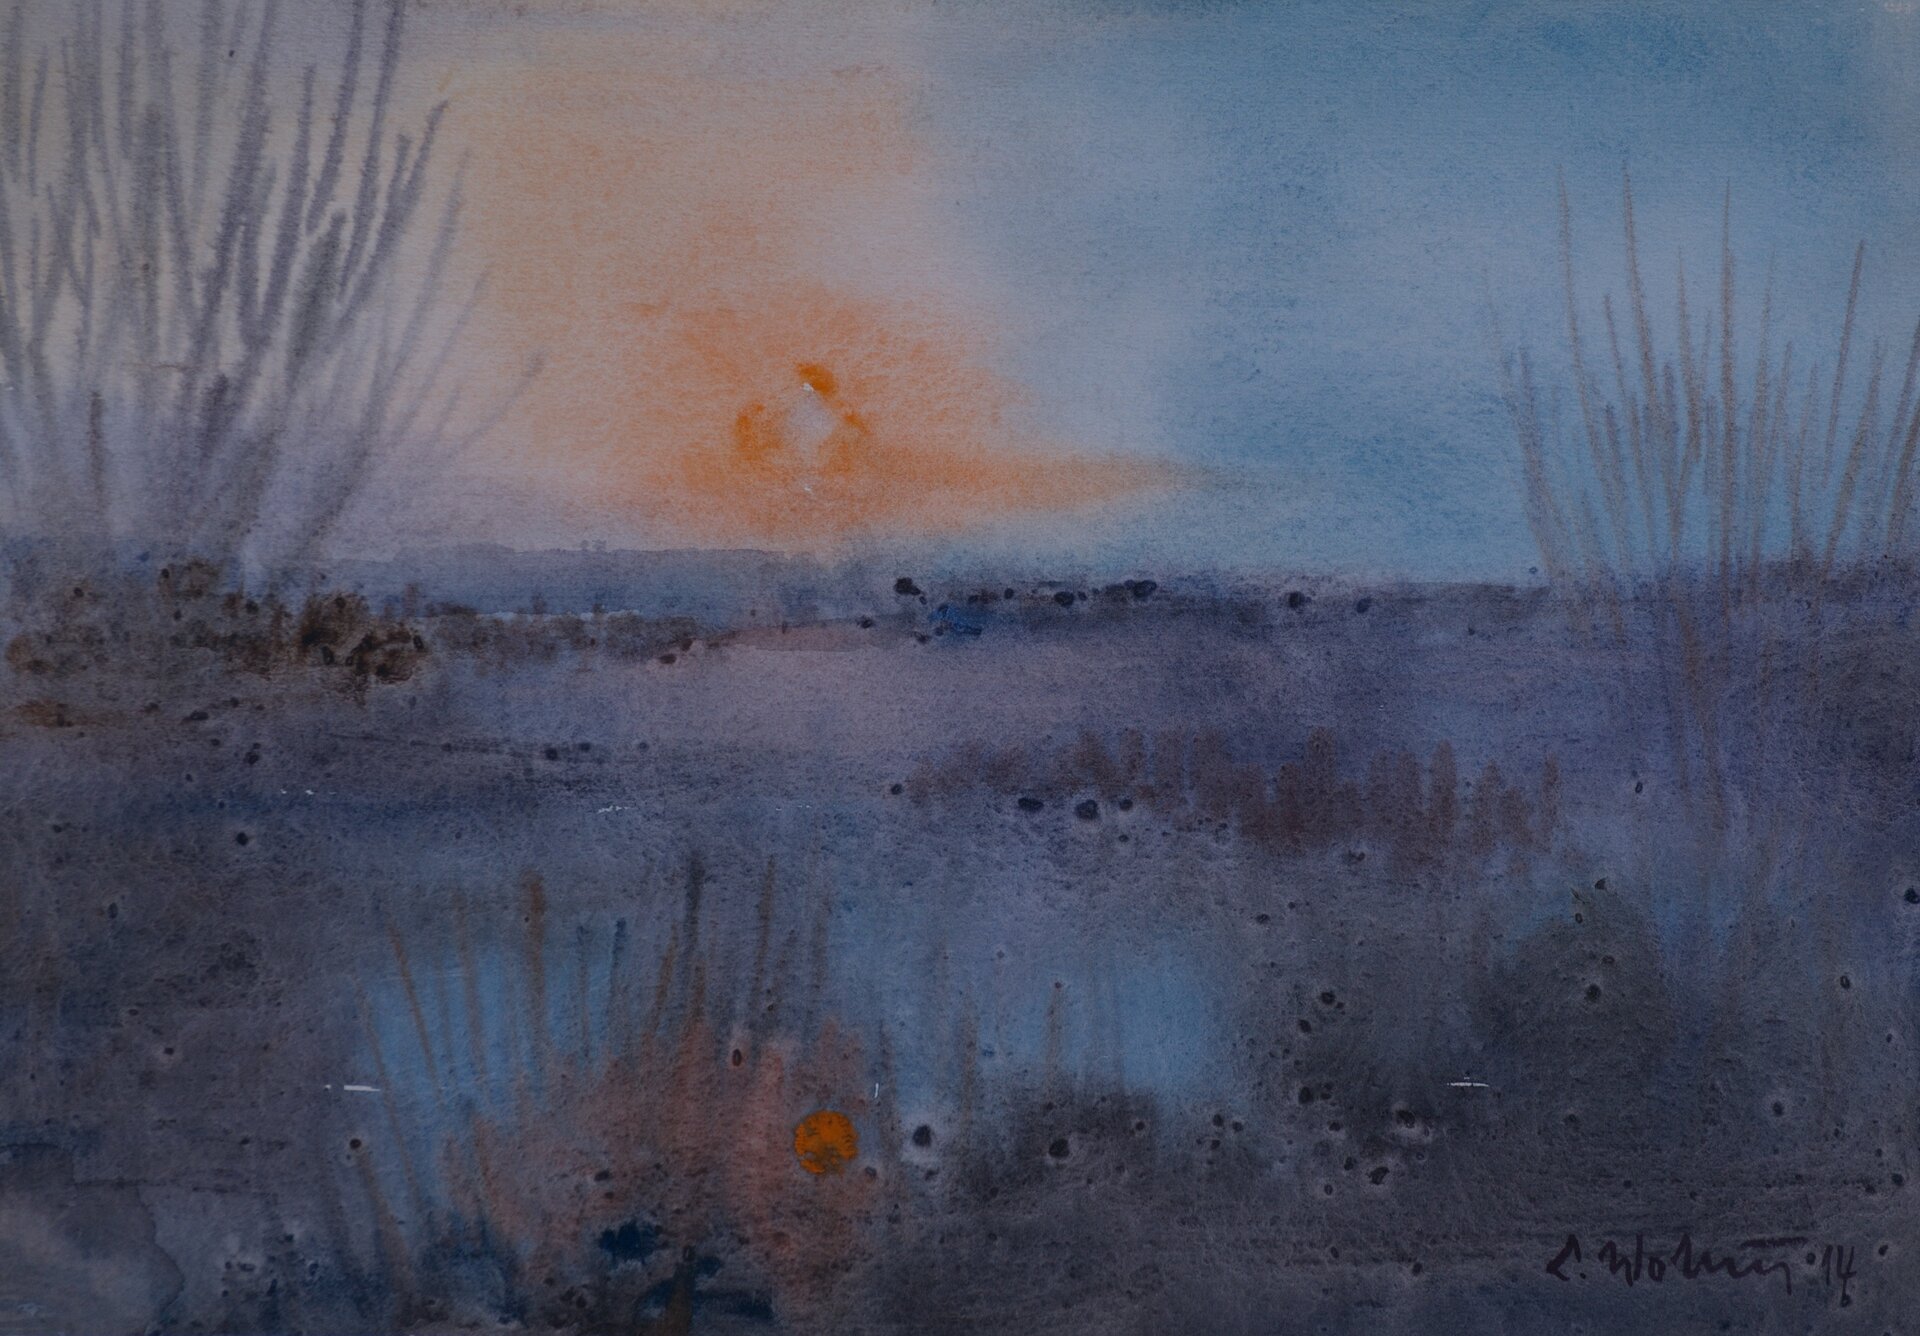 Ilustracja przedstawia obraz „Pejzaż” autorstwa Lecha Wolskiego. Akwarela ukazuje krajobraz z delikatnie zaznaczonymi krzewami i trawami oraz zachodzącym nad horyzontem słońcem. Kompozycja utrzymany jest w chłodnej niebiesko-szarej tonacji. Ciepły akcent stanowi tutaj jedynie rozmyty pomarańcz słońca.